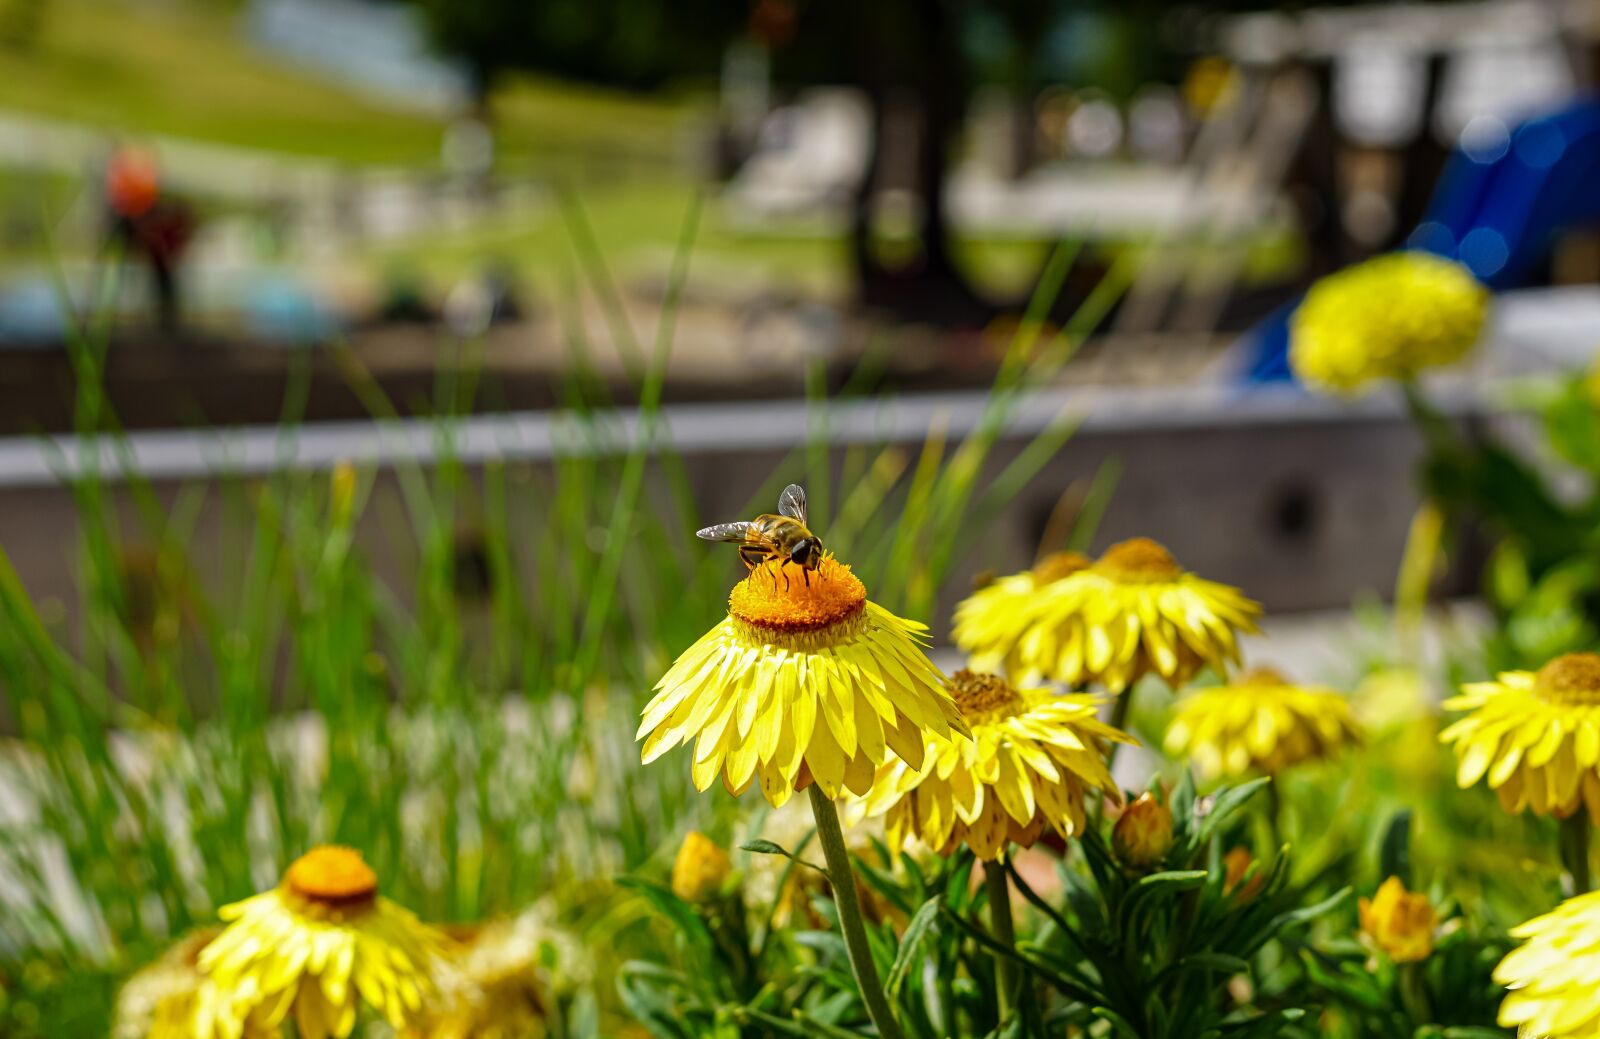 Samyang AF 35mm F1.4 FE sample photo. Bee, flower, nectar photography